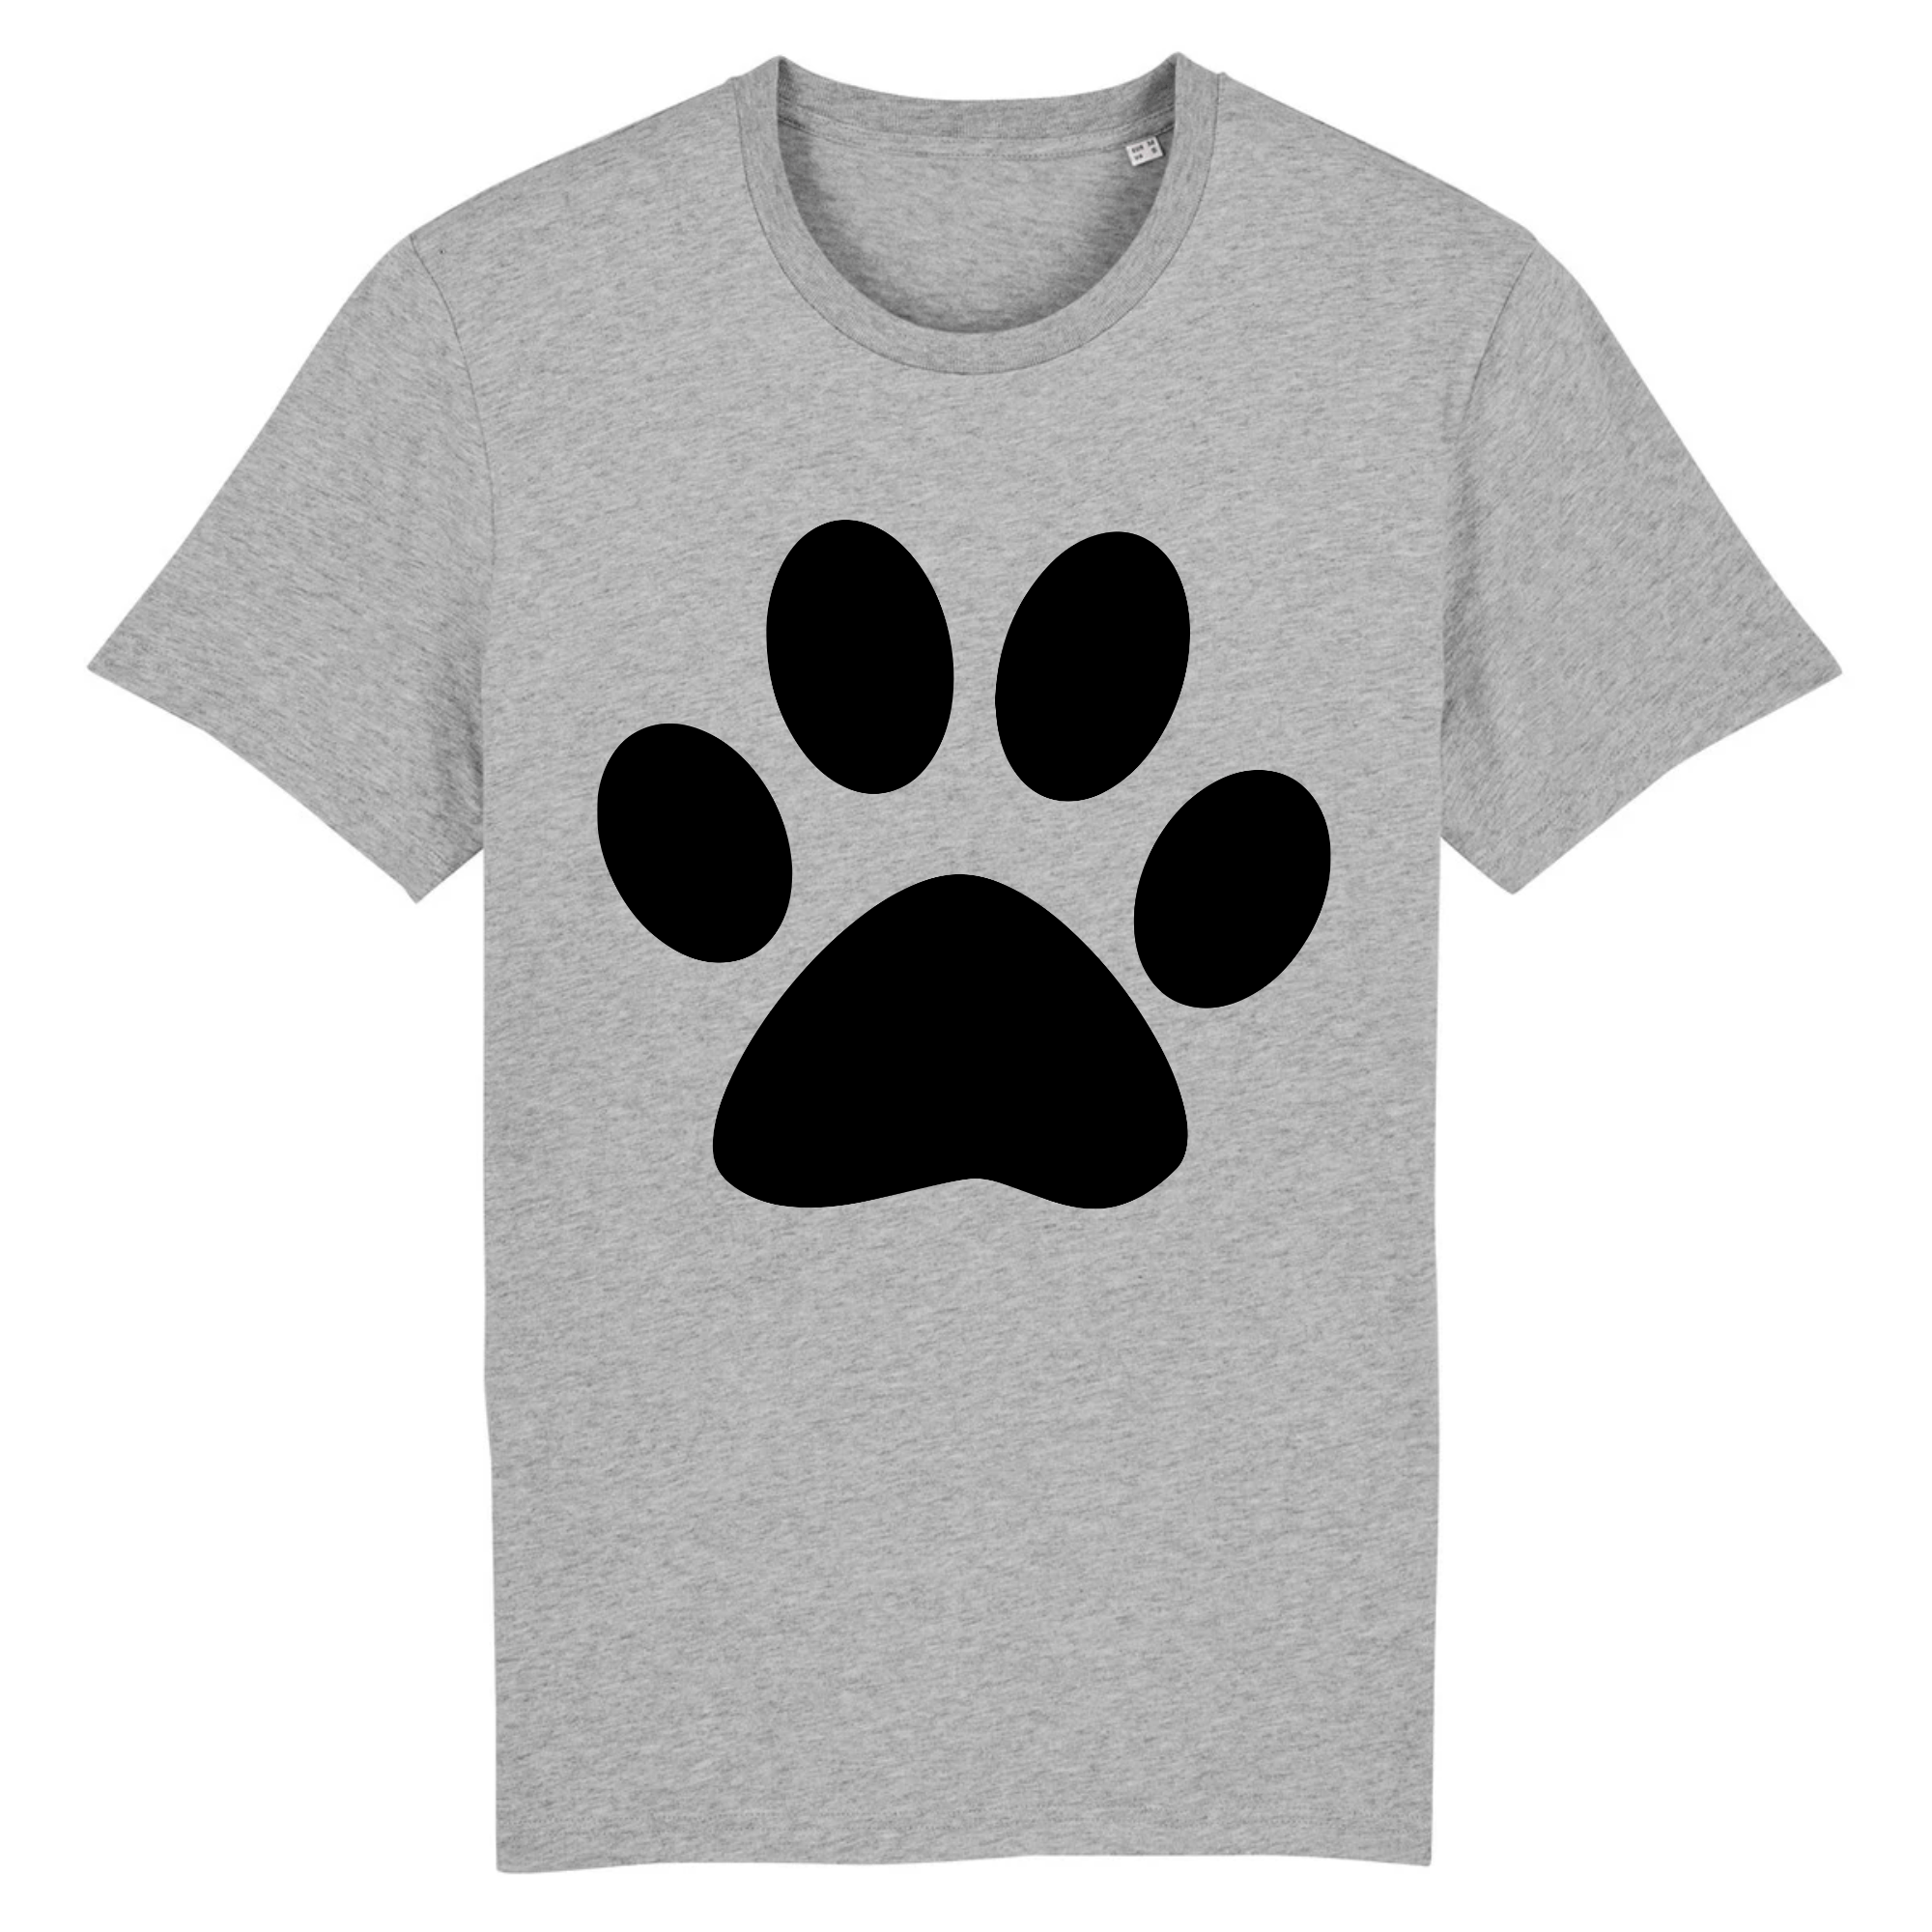 tee-shirt patte de chat couleur gris